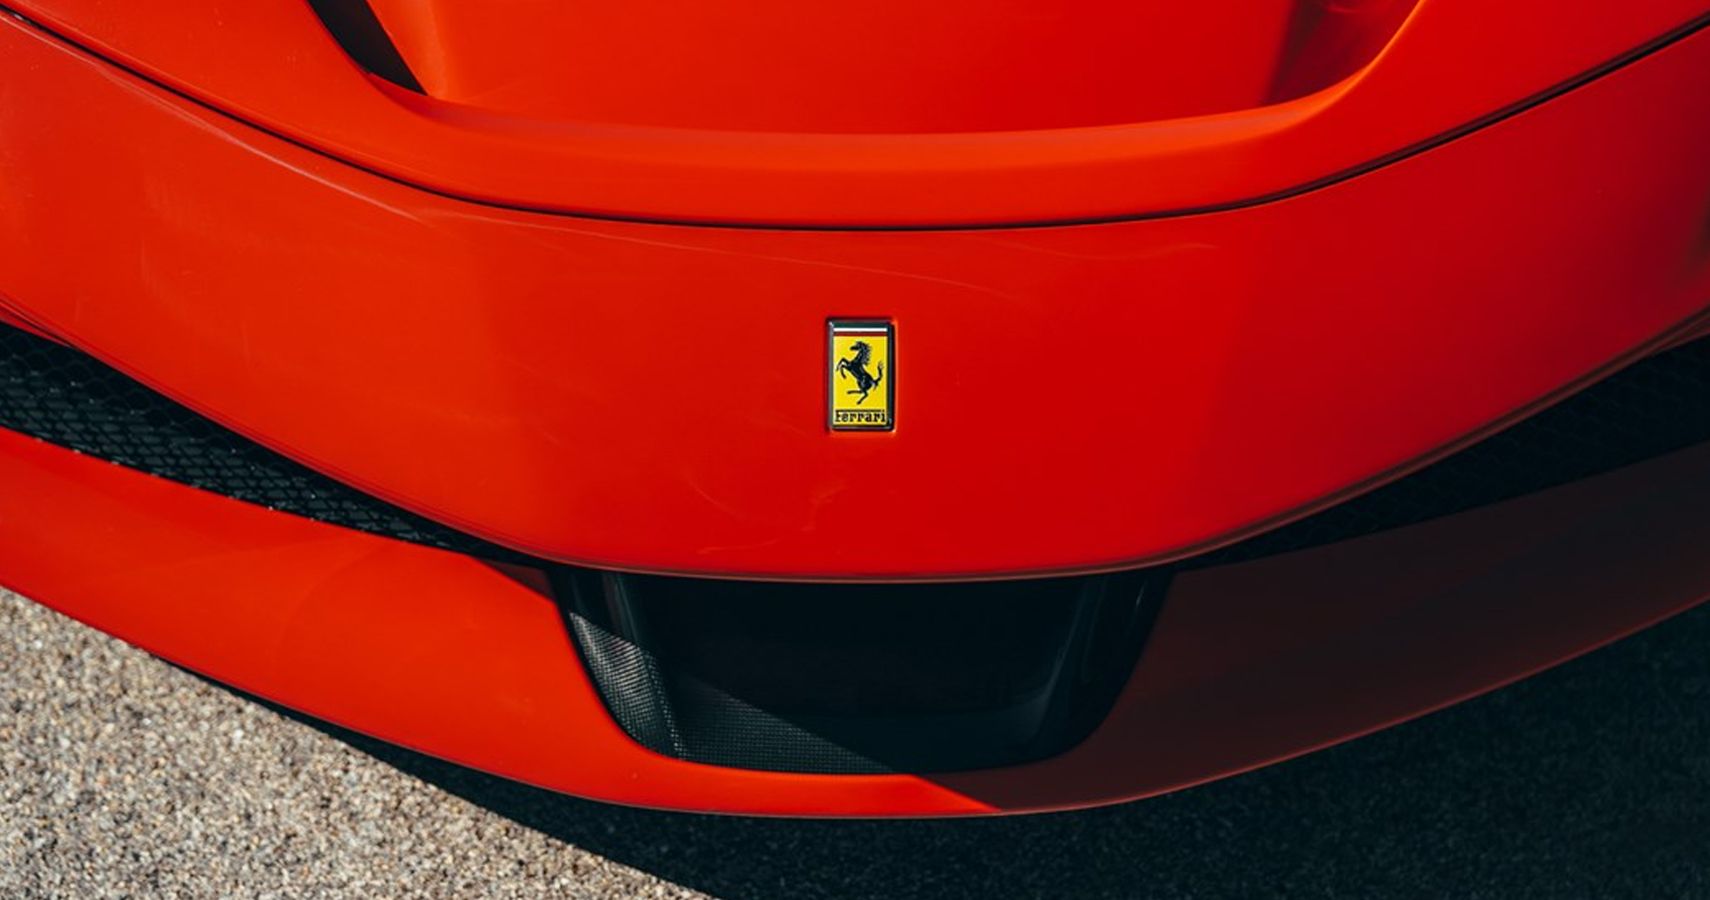 Ferrari Releasing Its First Electric Car In 2025 Embracing A Green Future